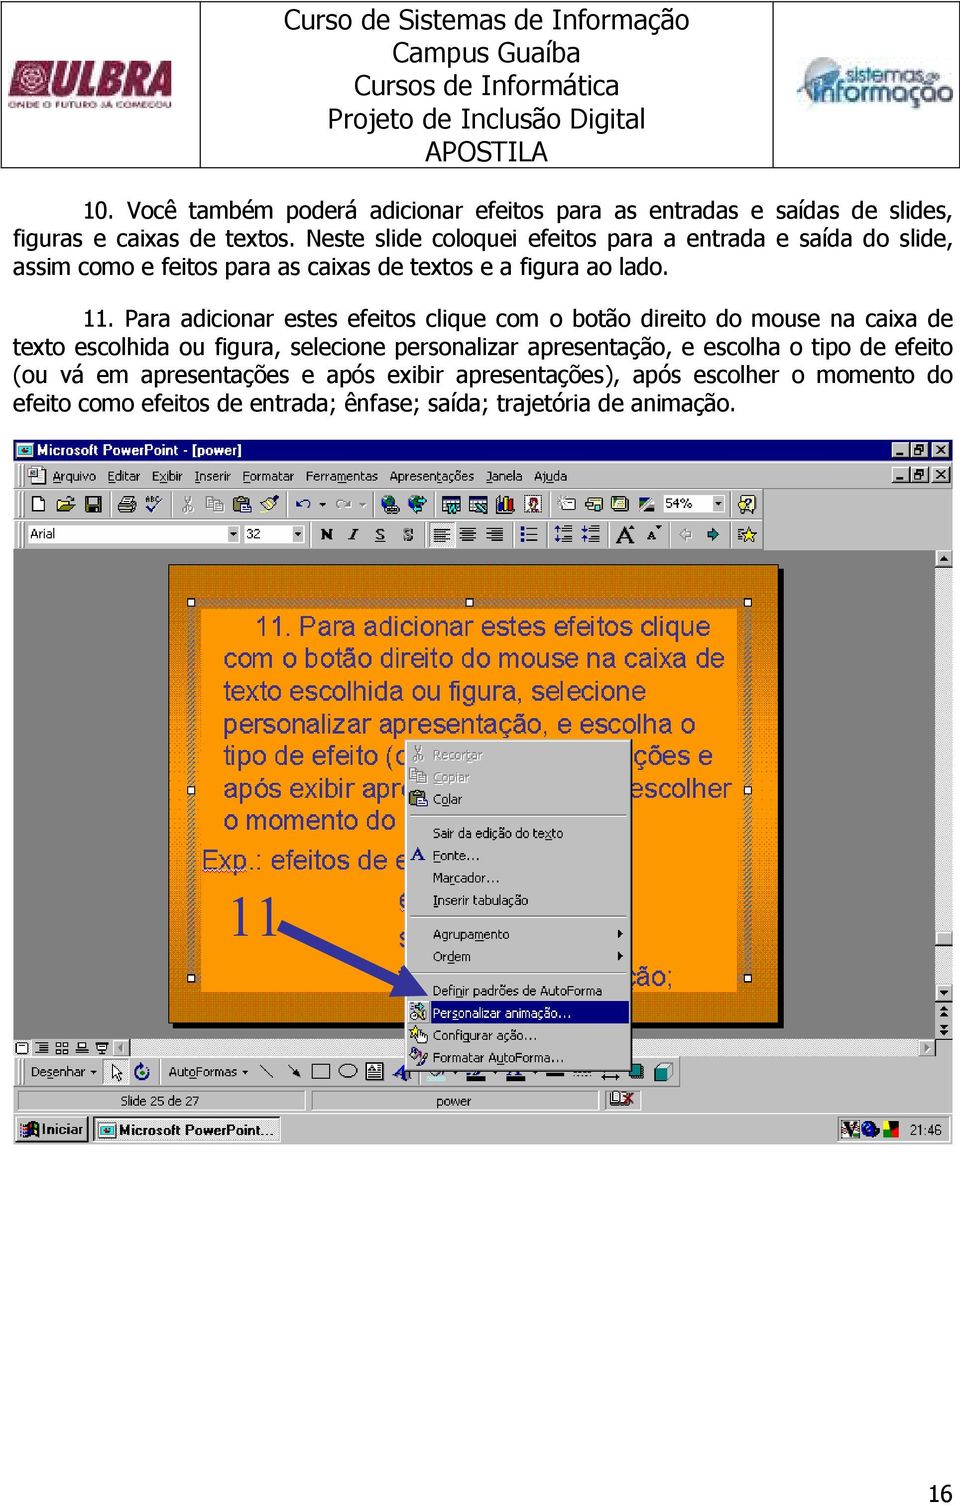 Para adicionar estes efeitos clique com o botão direito do mouse na caixa de texto escolhida ou figura, selecione personalizar apresentação,